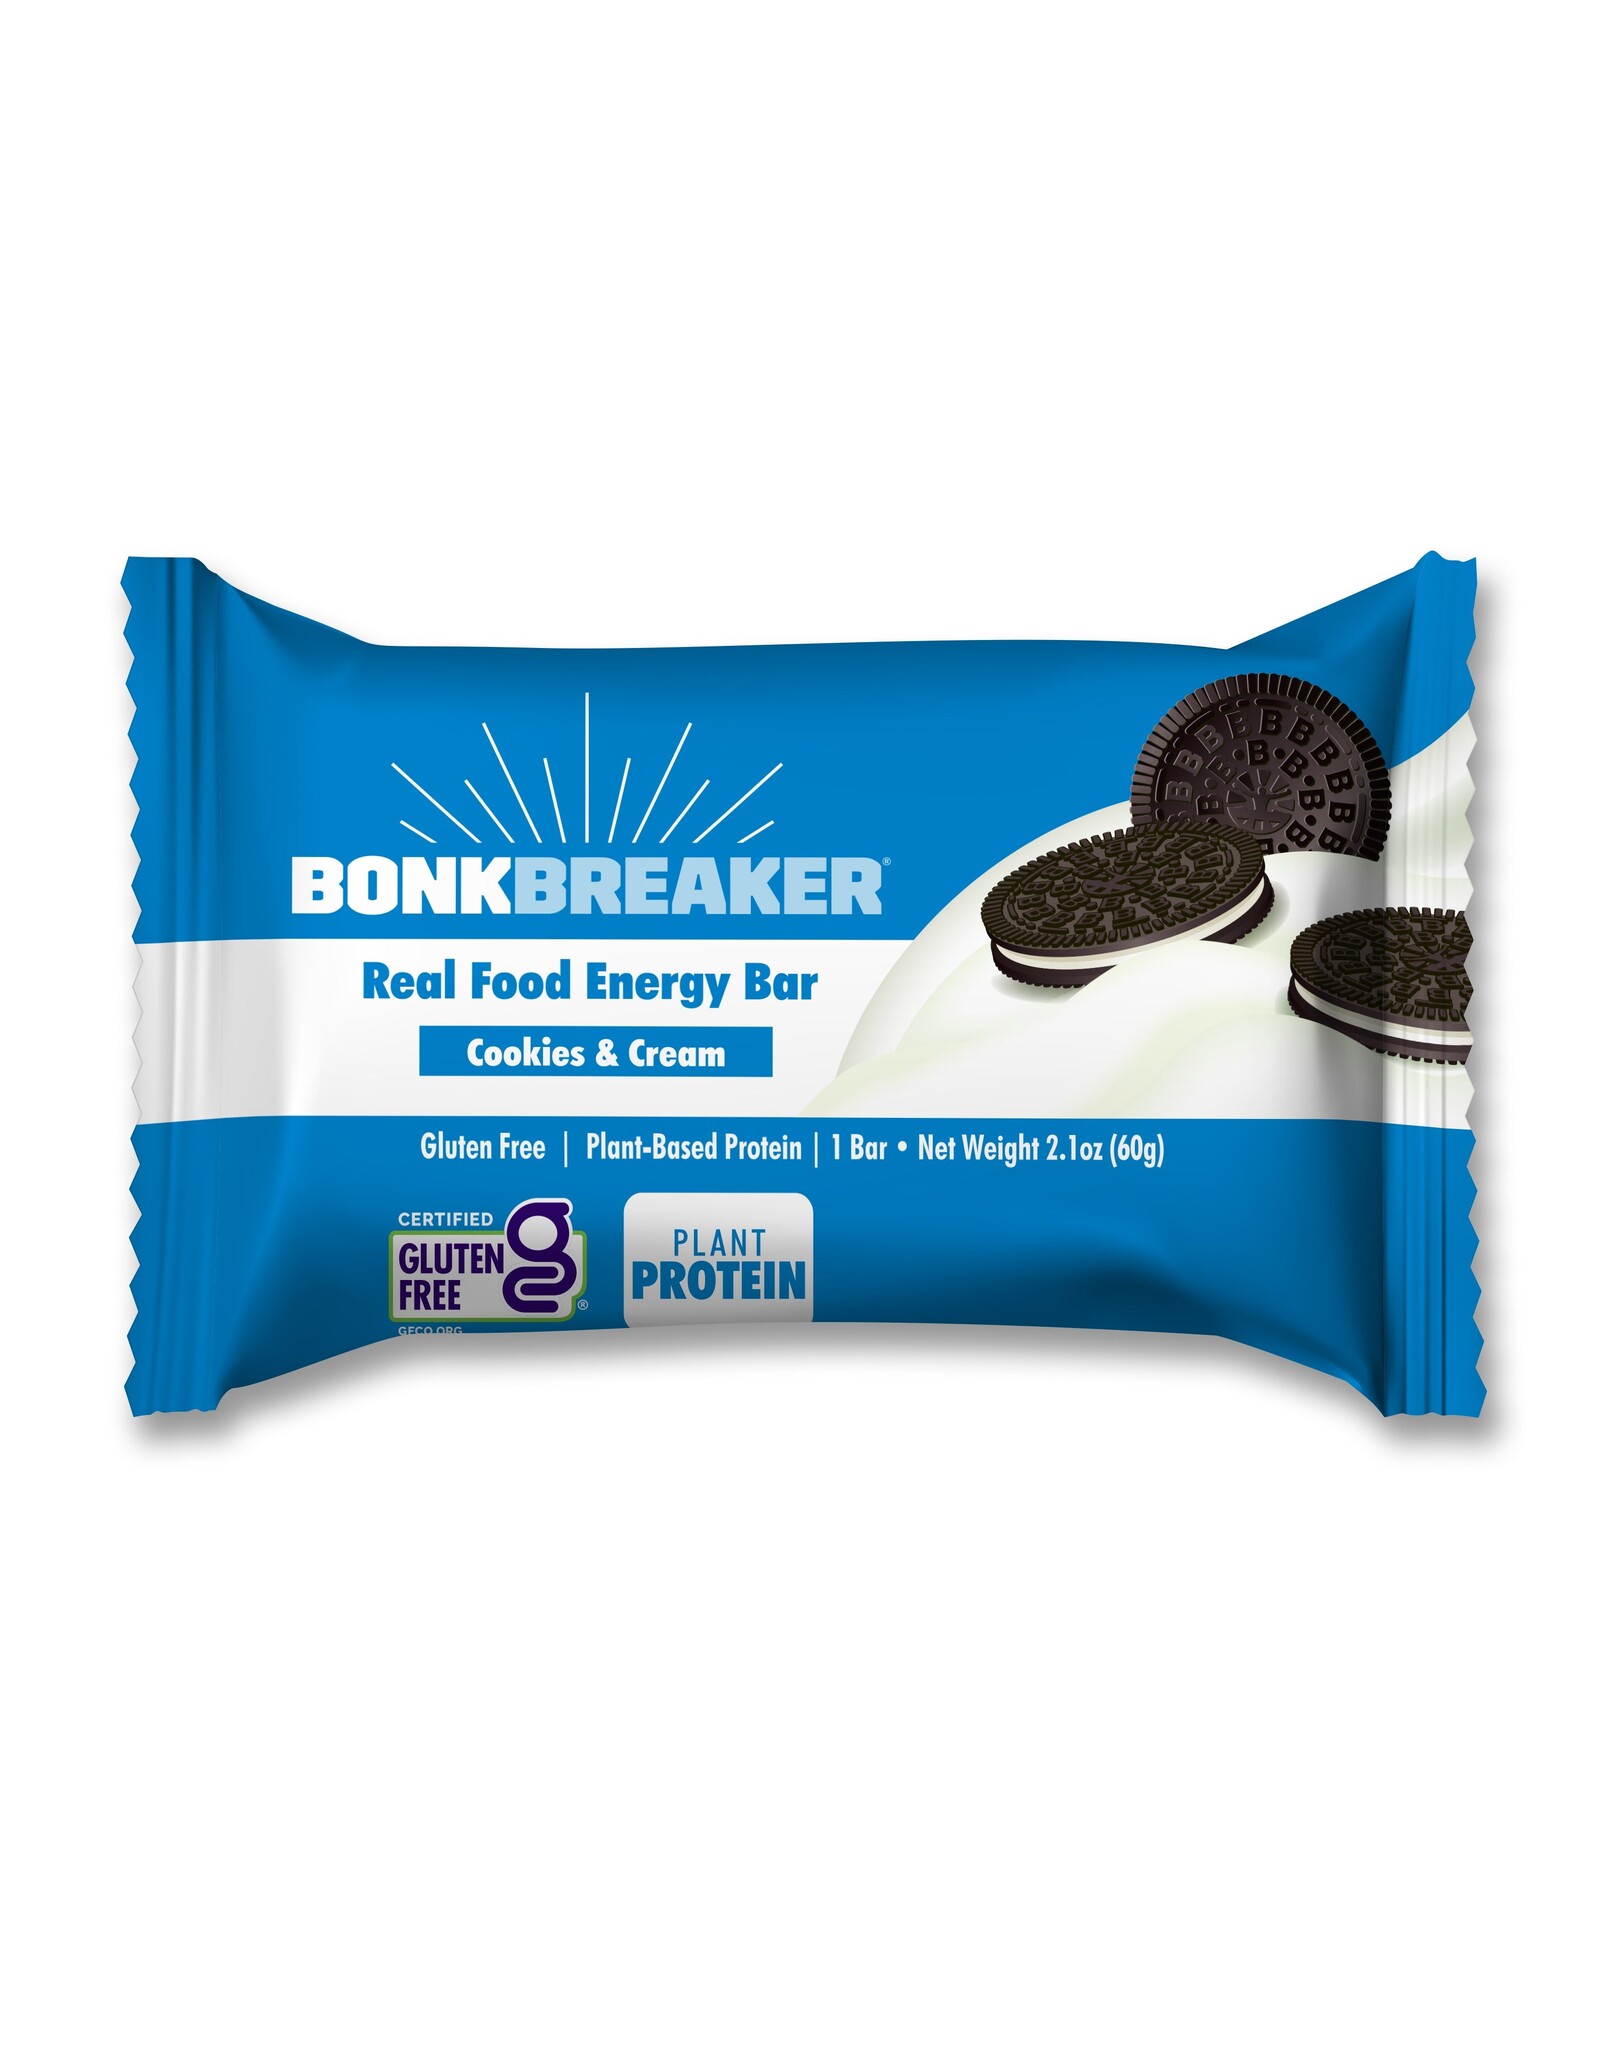 Bonk Breaker Bonk Breaker Energy Bars